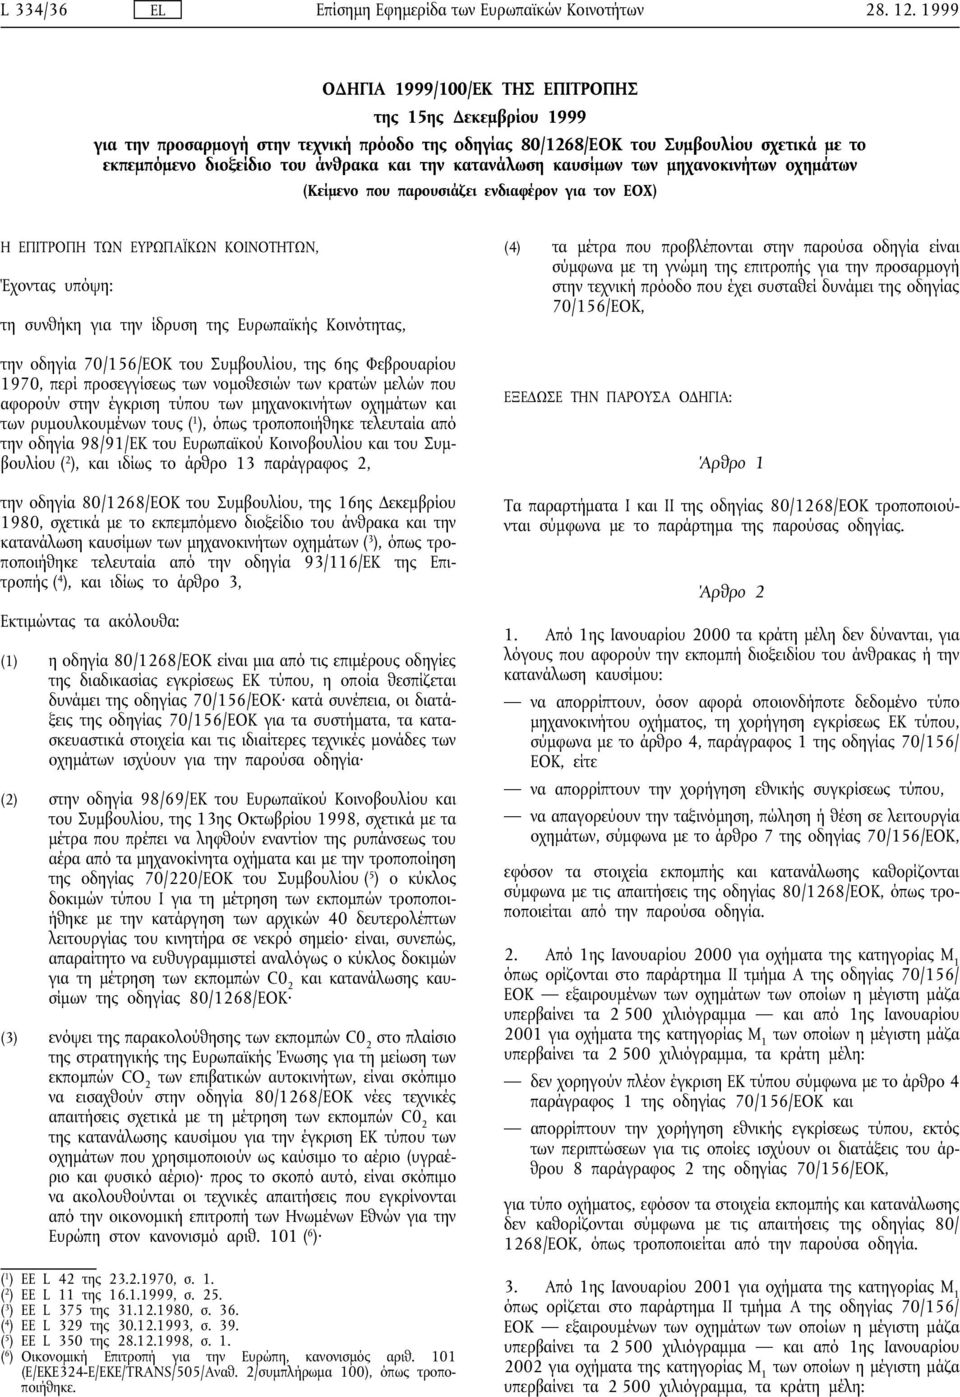 την οδηγία 70/156/ΕΟΚ του Συµβουλίου, της 6ης Φεβρουαρίου 1970, περί προσεγγίσεως των νοµοθεσιών των κρατών µελών που αφορούν στην έγκριση τύπου των µηχανοκινήτων οχηµάτων και των ρυµουλκουµένων τους